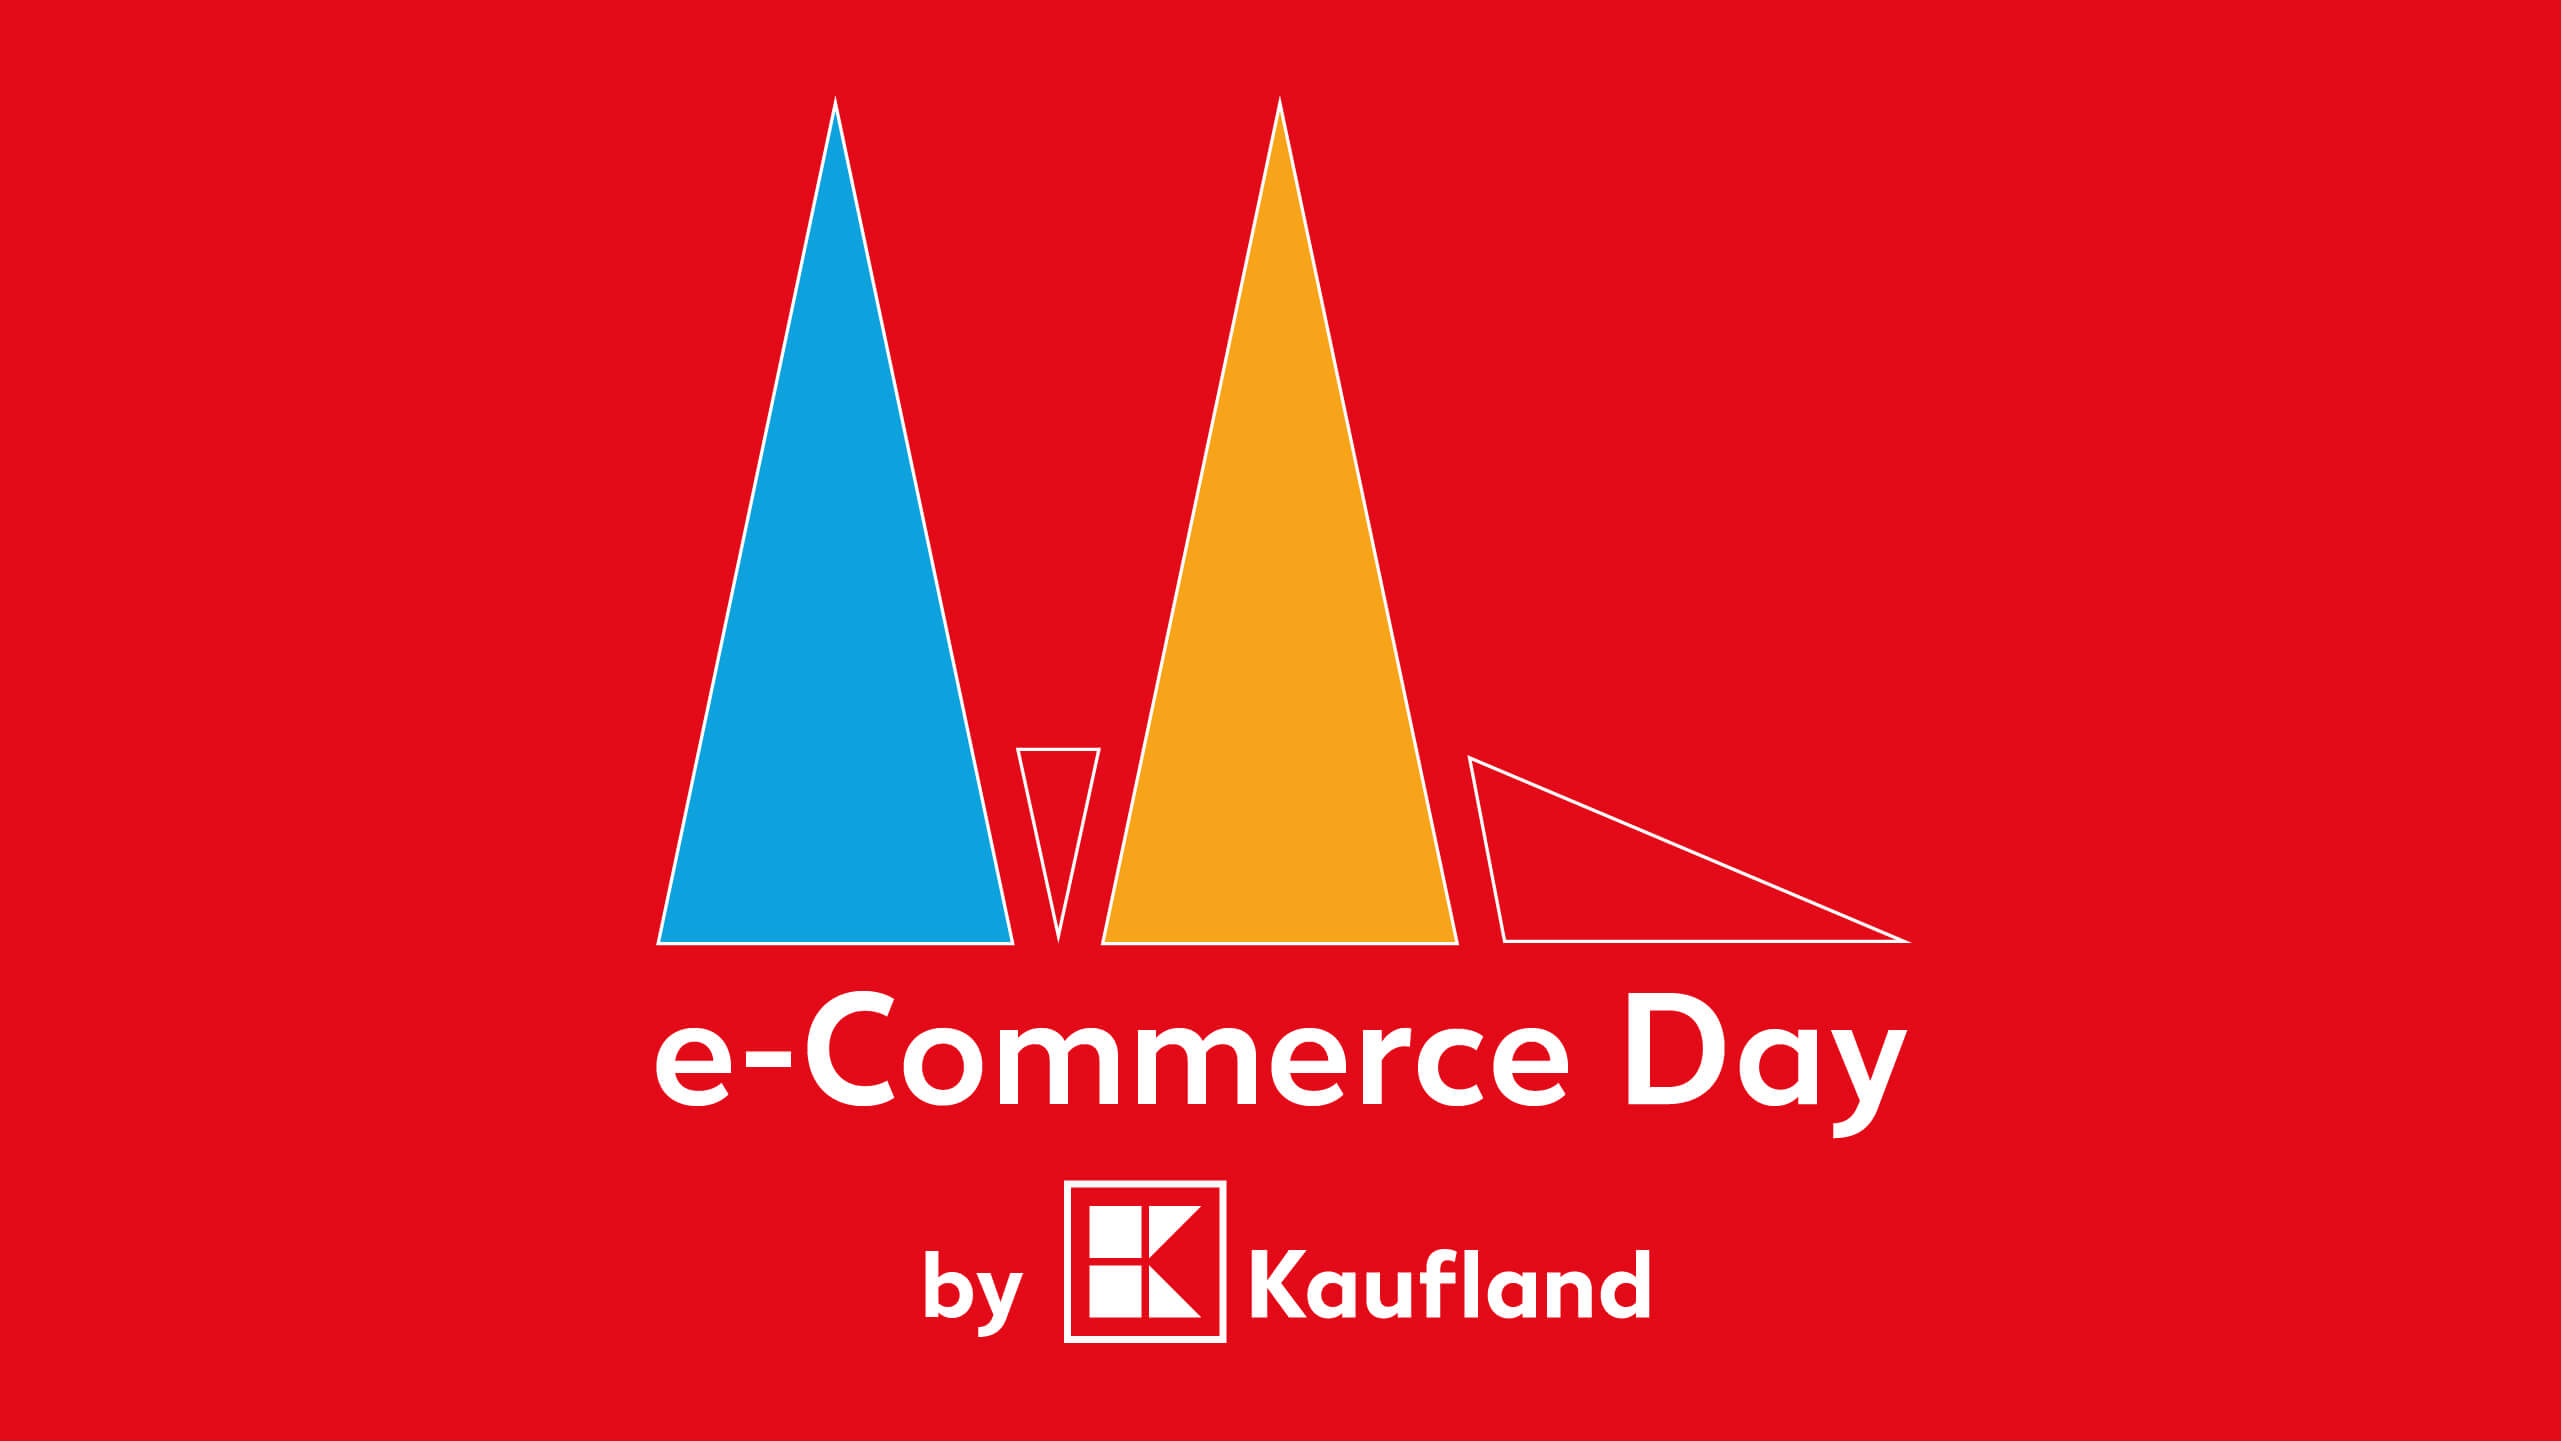 Das Bild zeigt das Logo von Kaufland sowie das des e-Commerce Day auf rotem Hintergrund